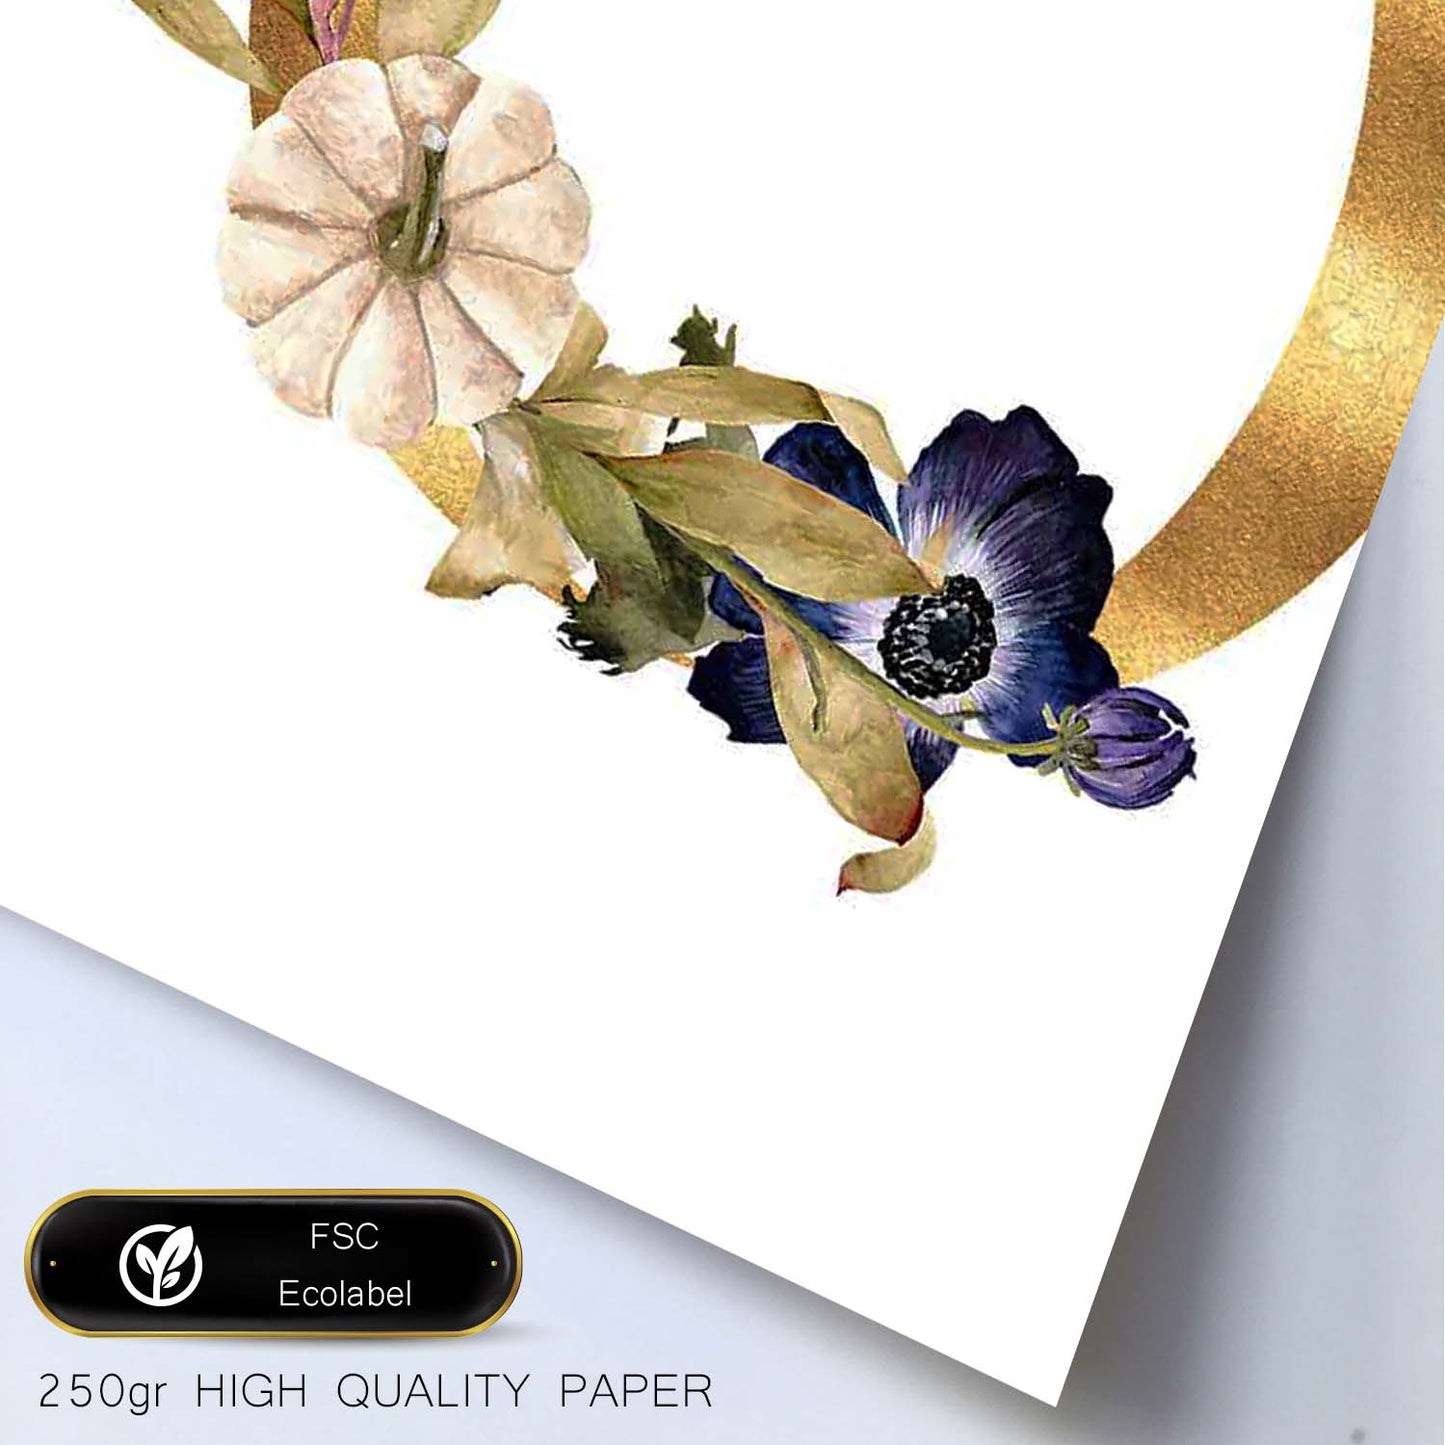 Poster de letra O. Lámina estilo Dorado Floral con imágenes del alfabeto.-Artwork-Nacnic-Nacnic Estudio SL